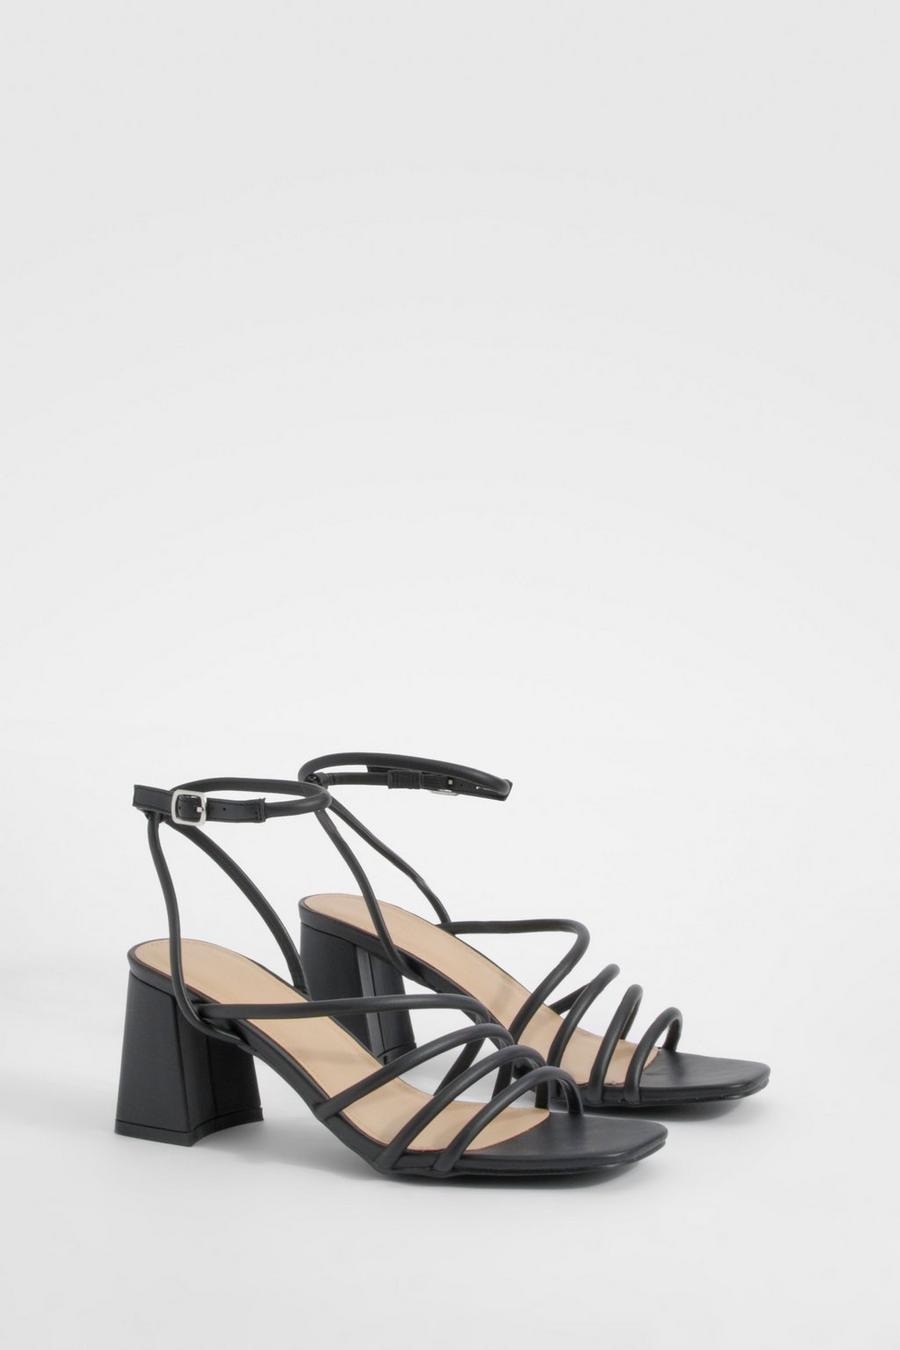 Chaussures asymétriques à petit talon carré, Black